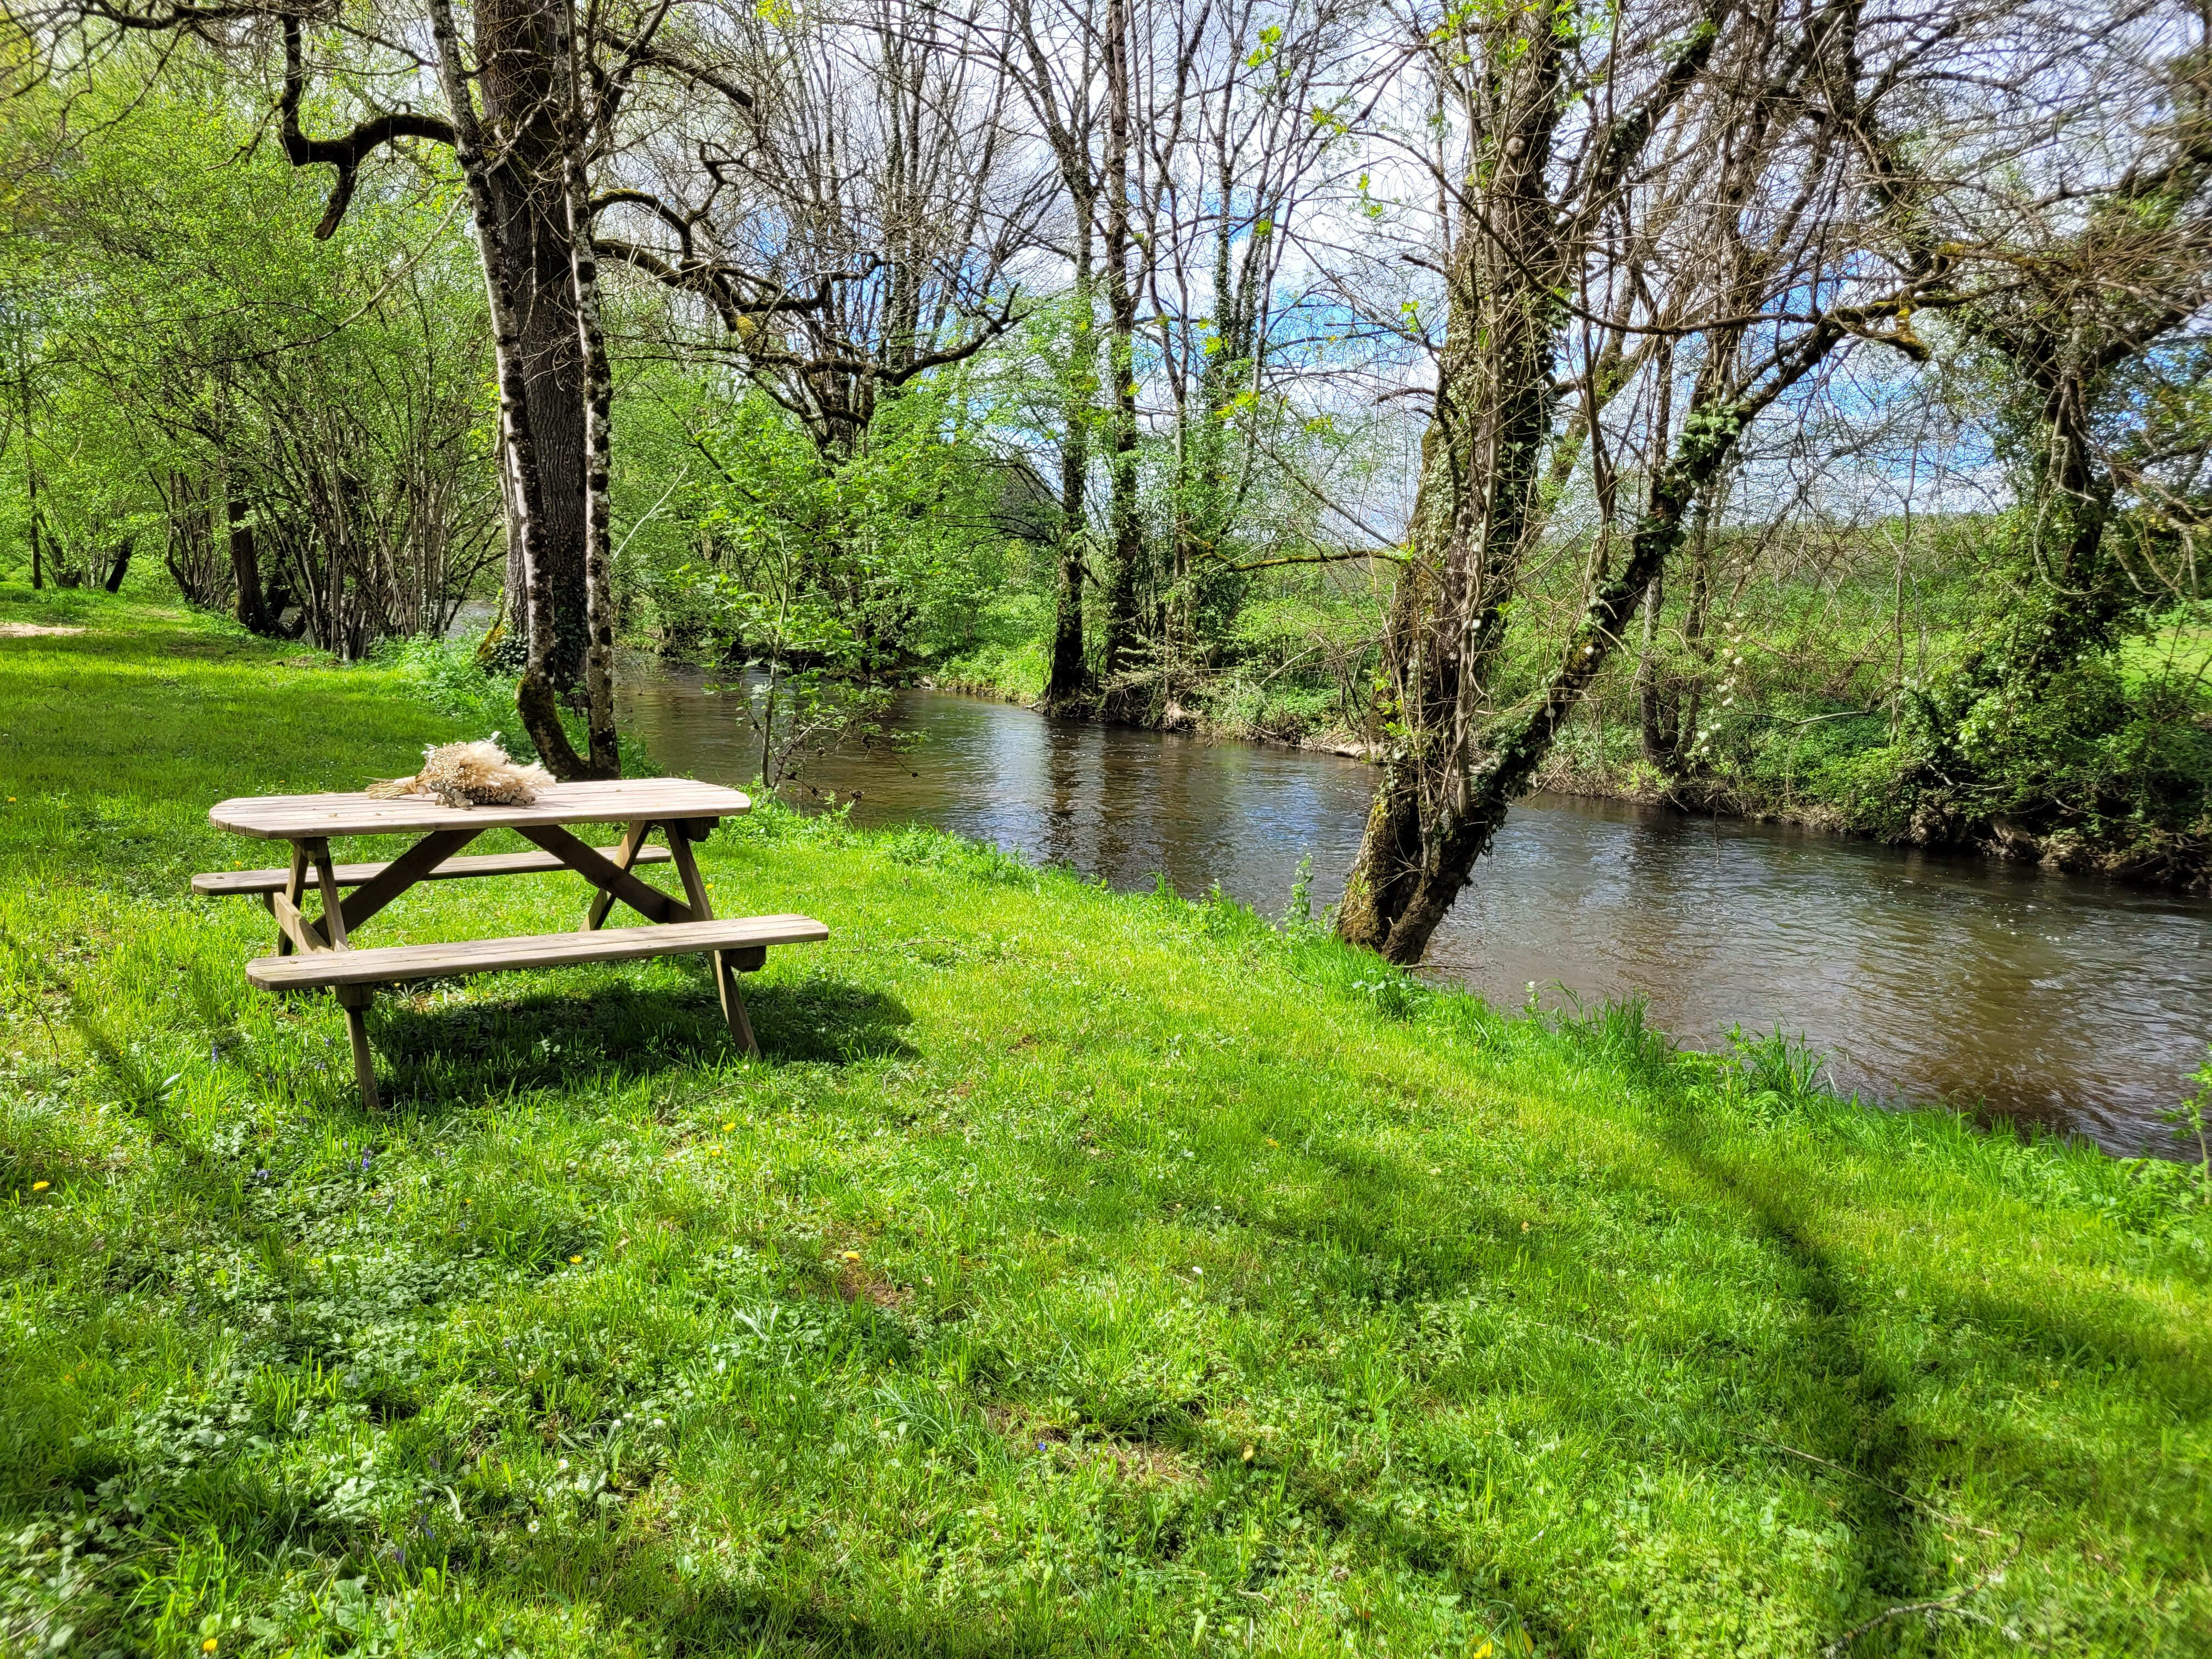 Table de pique-nique en bois située dans un jardin luxuriant avec vue sur une rivière tranquille, idéale pour une détente en plein air.